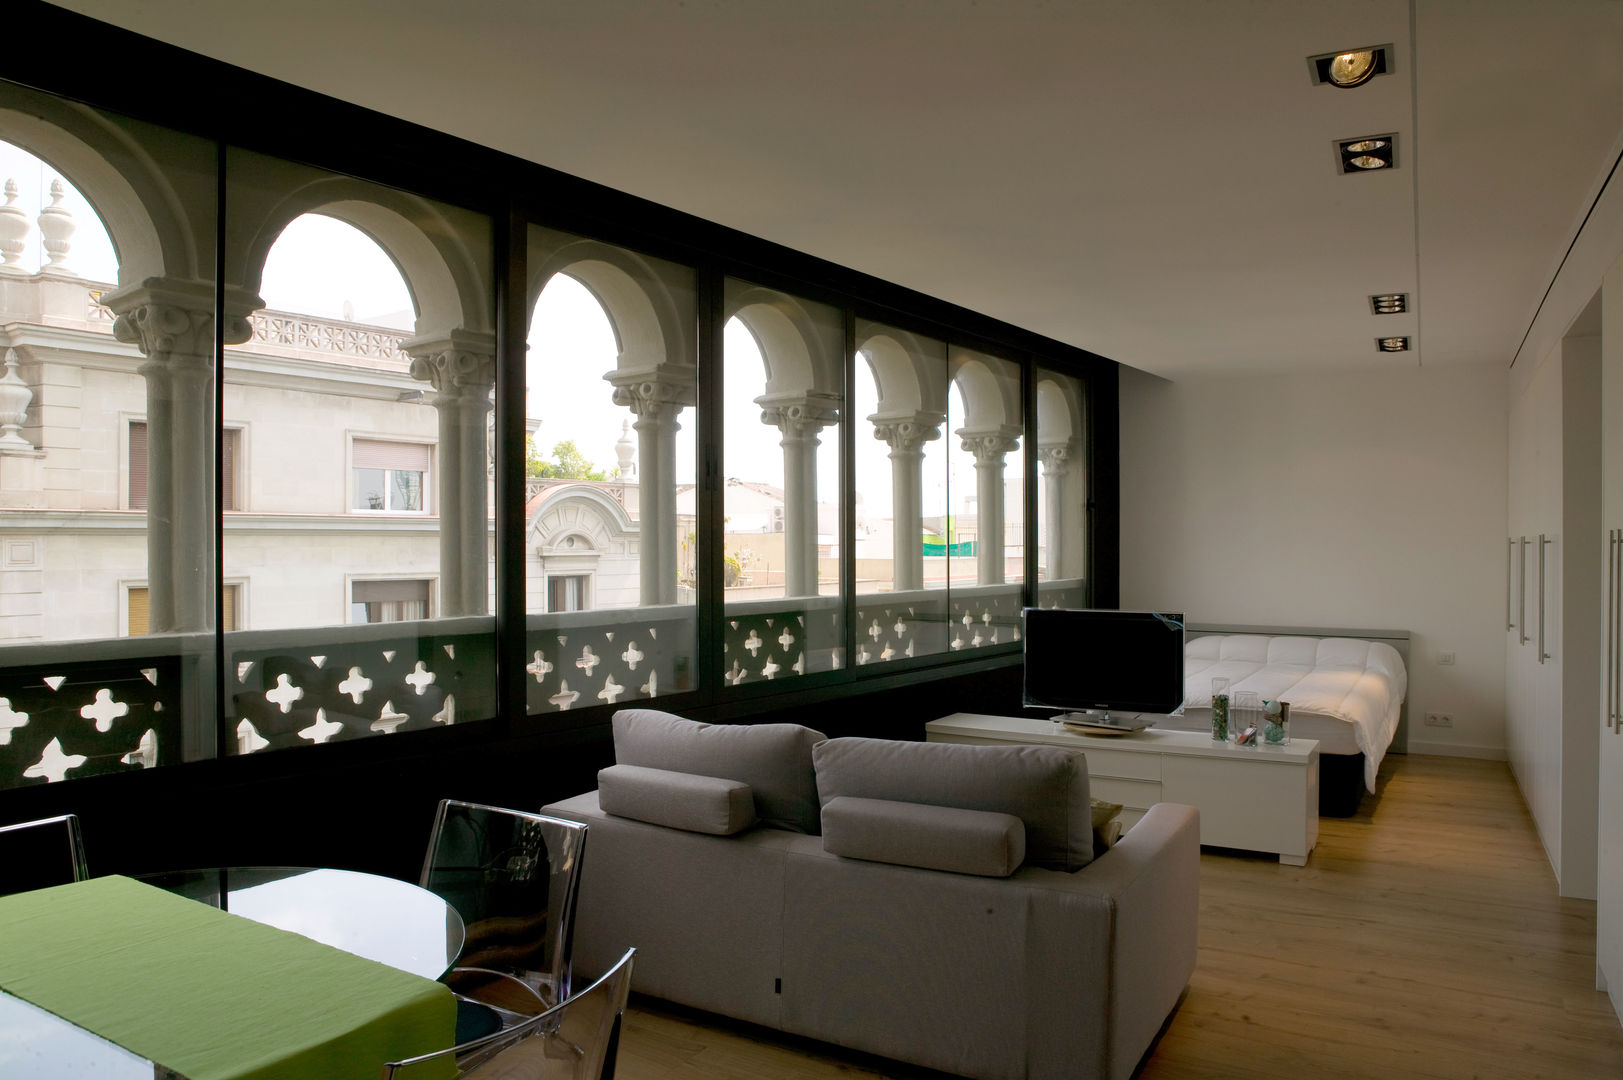 Rehabilitación, reforma, diseño y decoración de un mini piso de 47 m2 ILZARBE house, projectelab projectelab 계단 우드 + 플라스틱